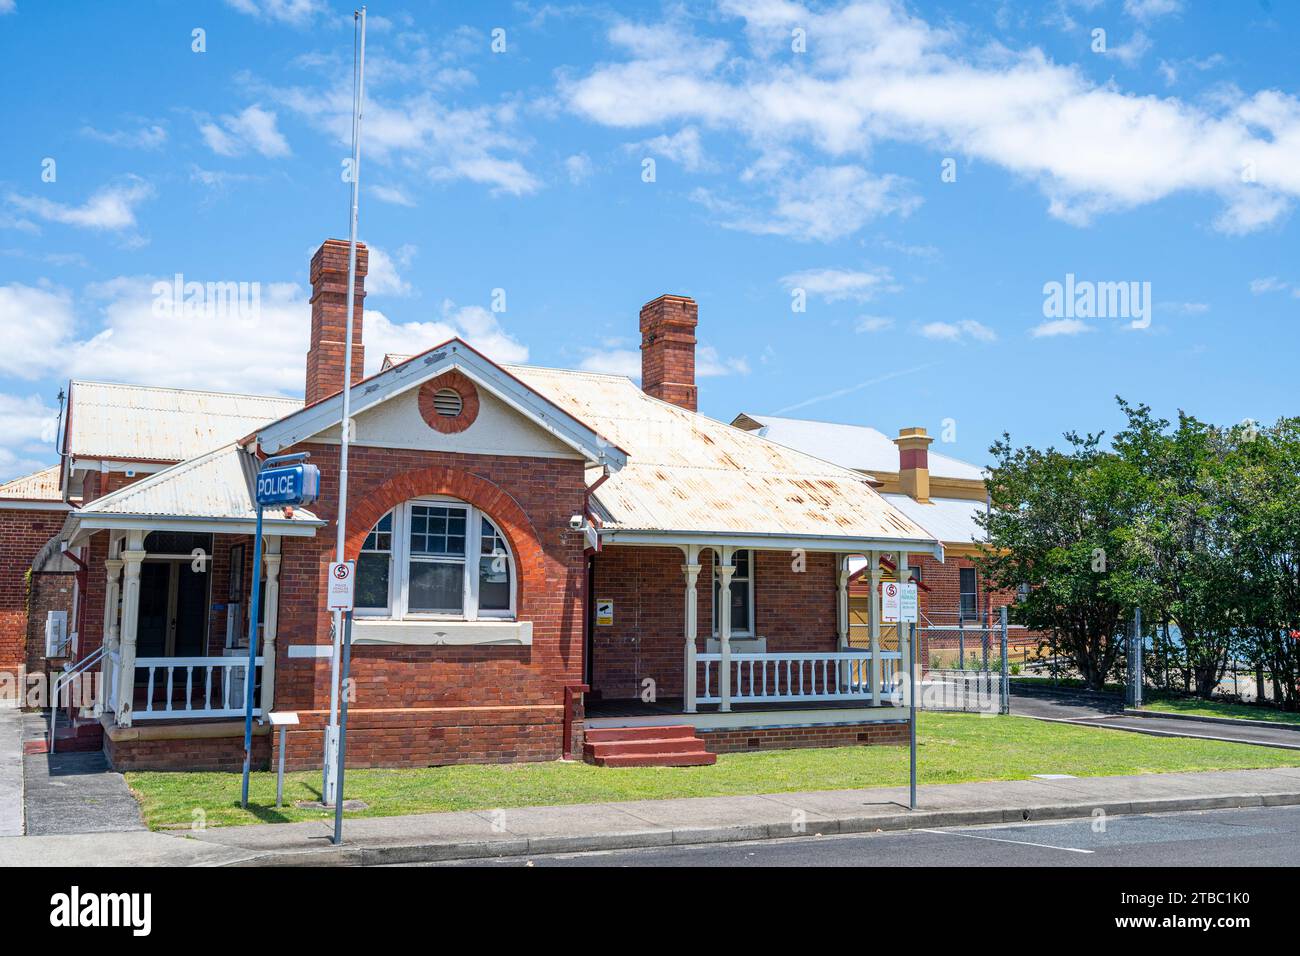 Vue extérieure du poste de police en briques. MacLean, Nouvelle-Galles du Sud, Australie Banque D'Images